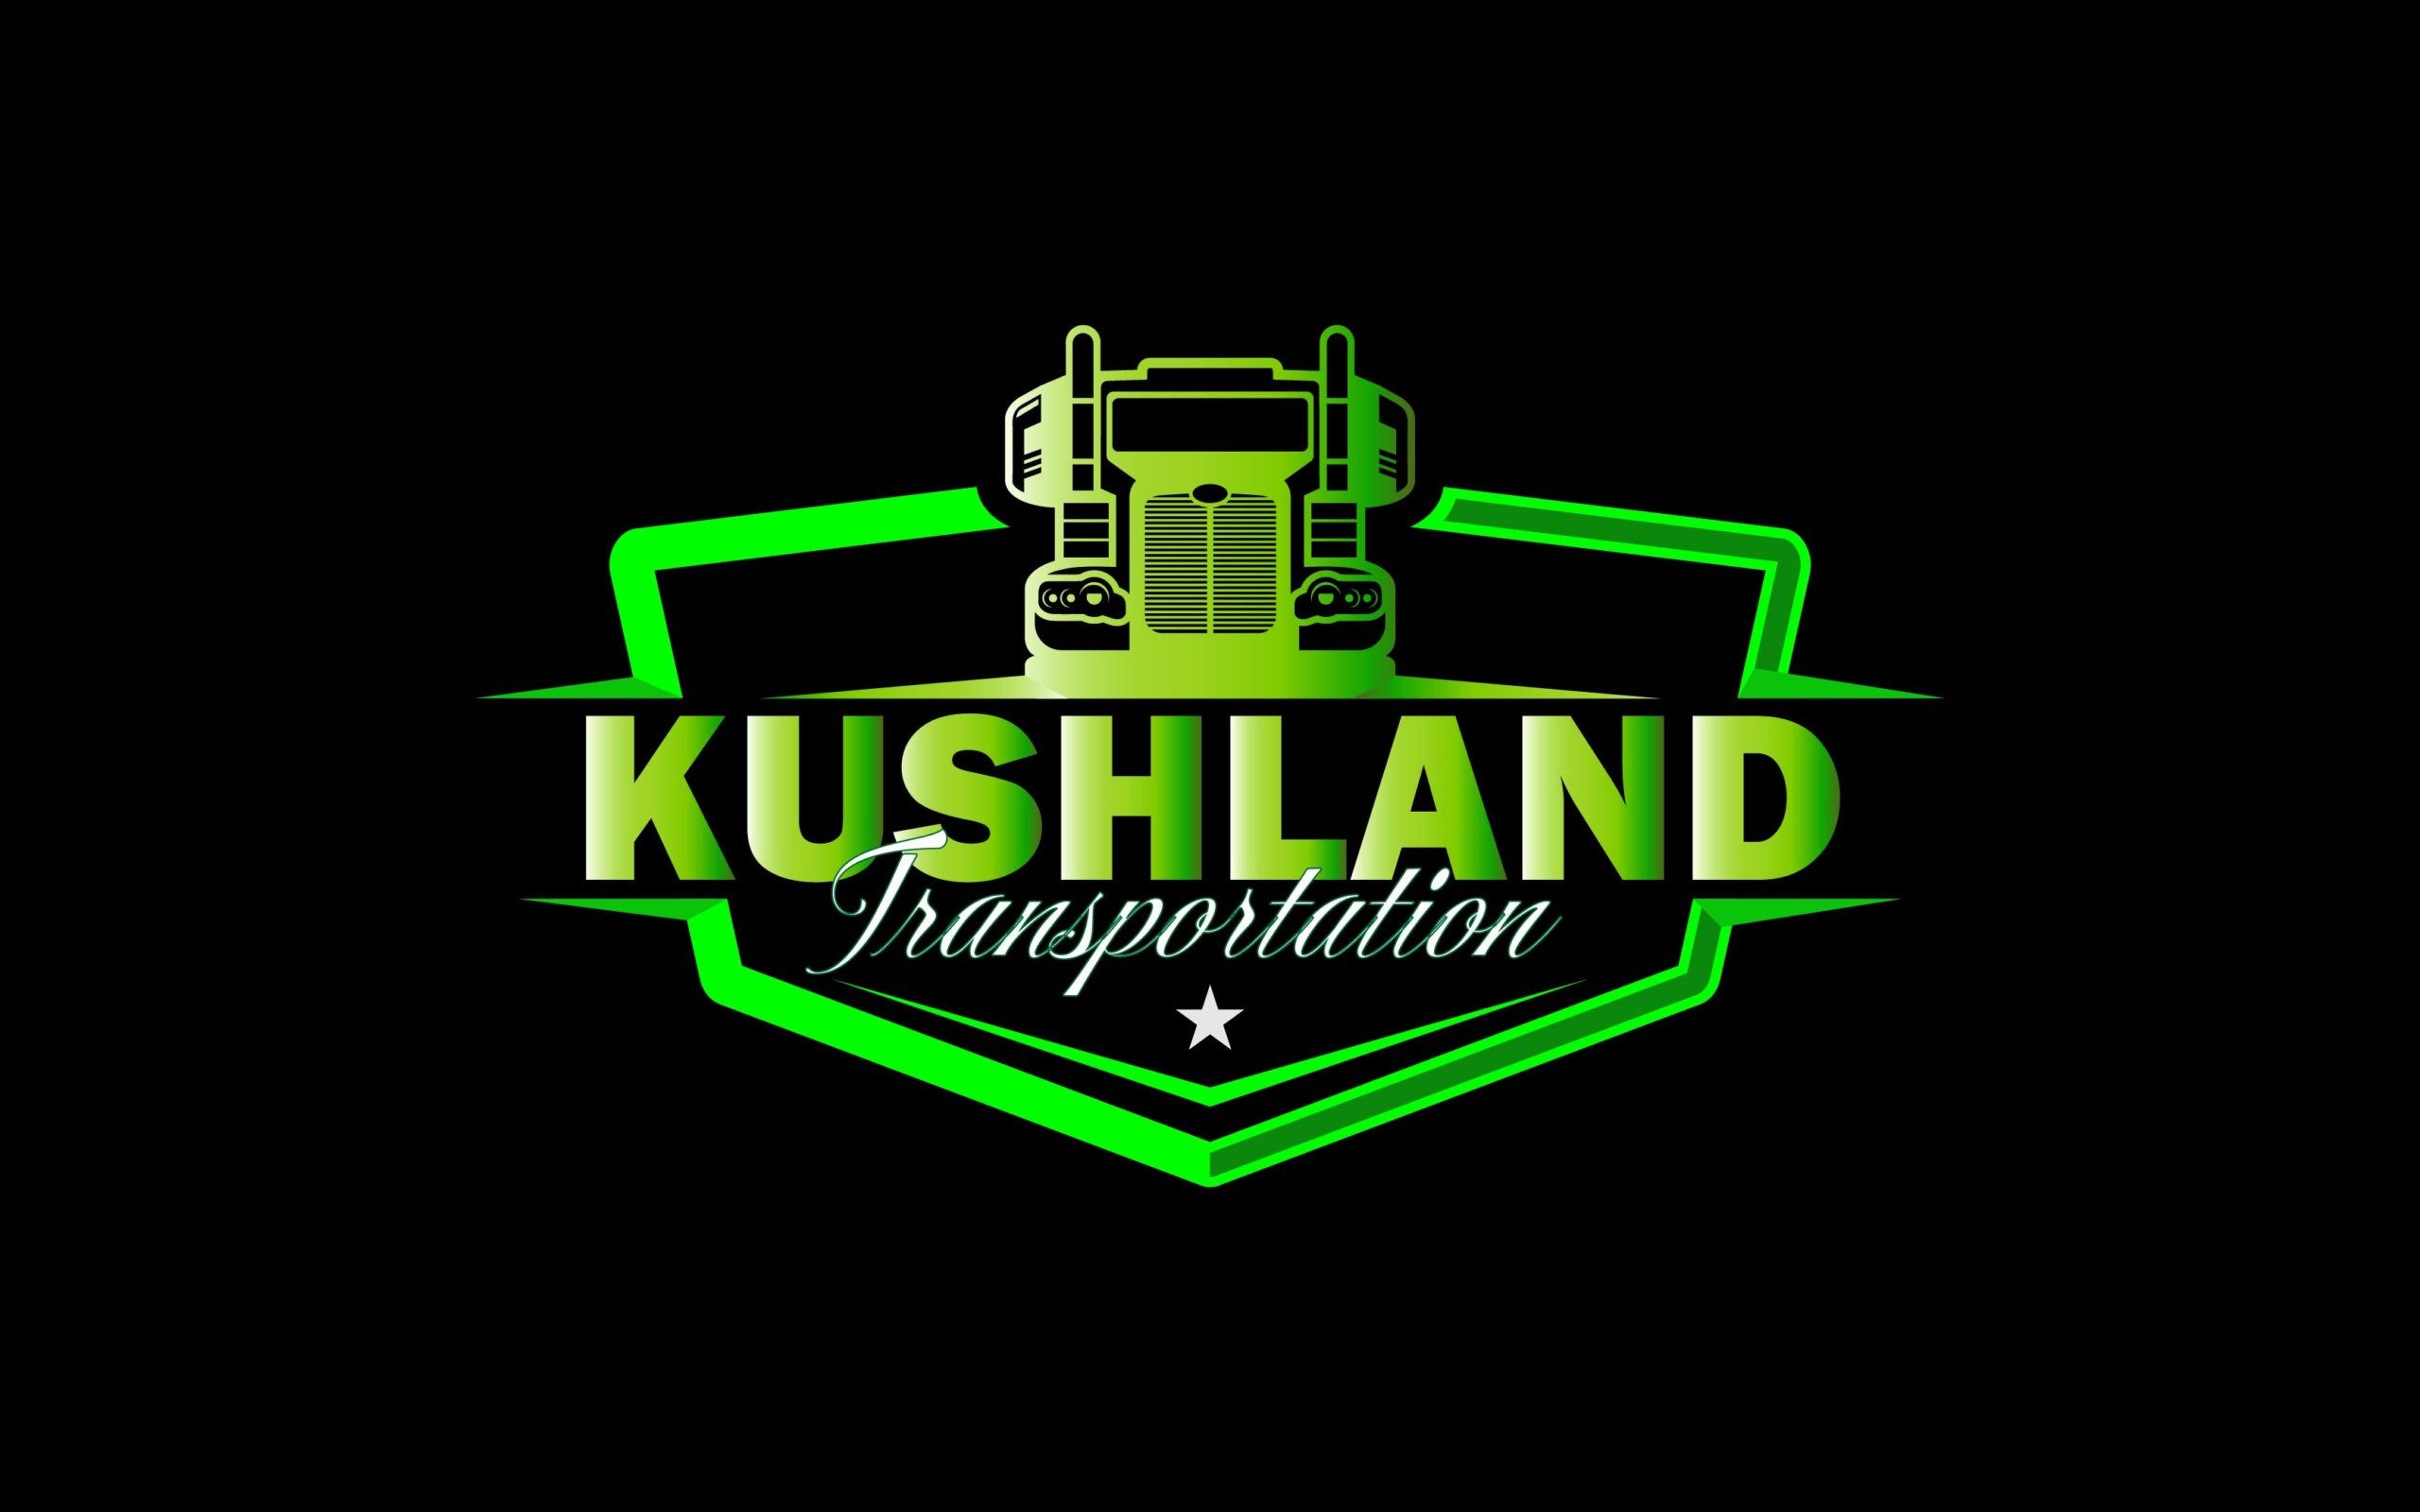 Kushland Transportation